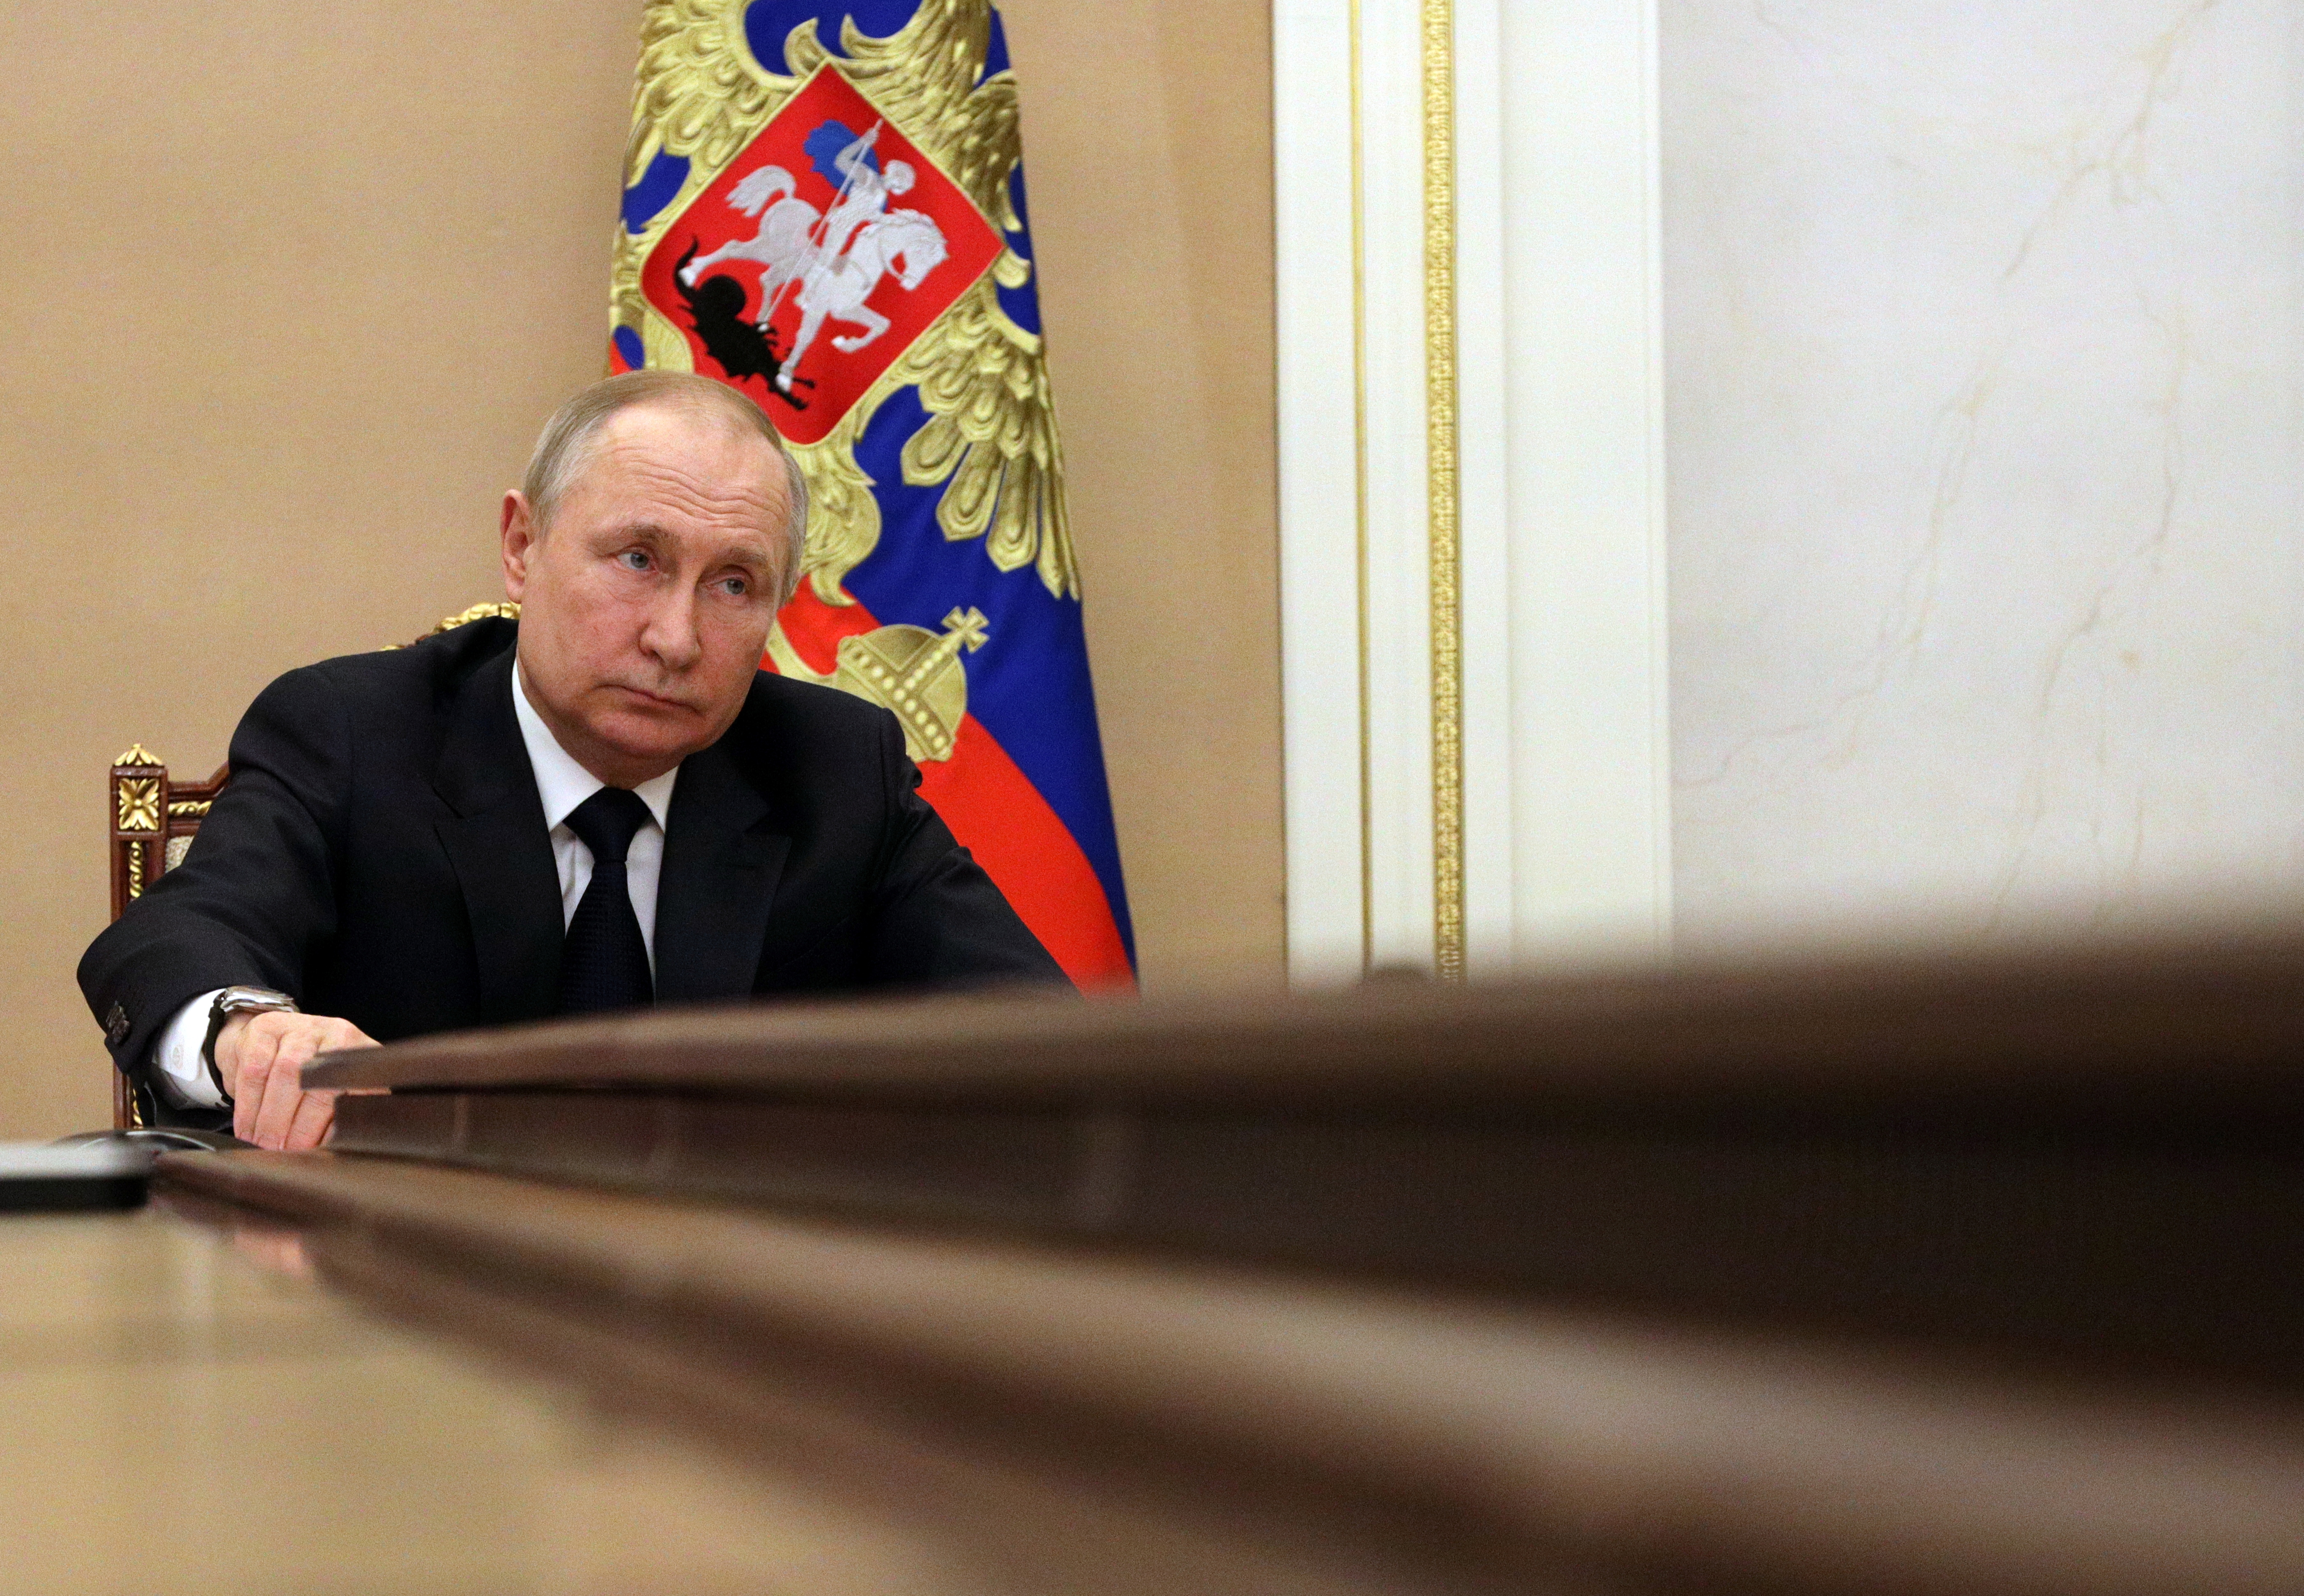 Guerre en Ukraine : Vladimir Poutine dit que les sanctions contre la Russie affaiblissent l'Occident